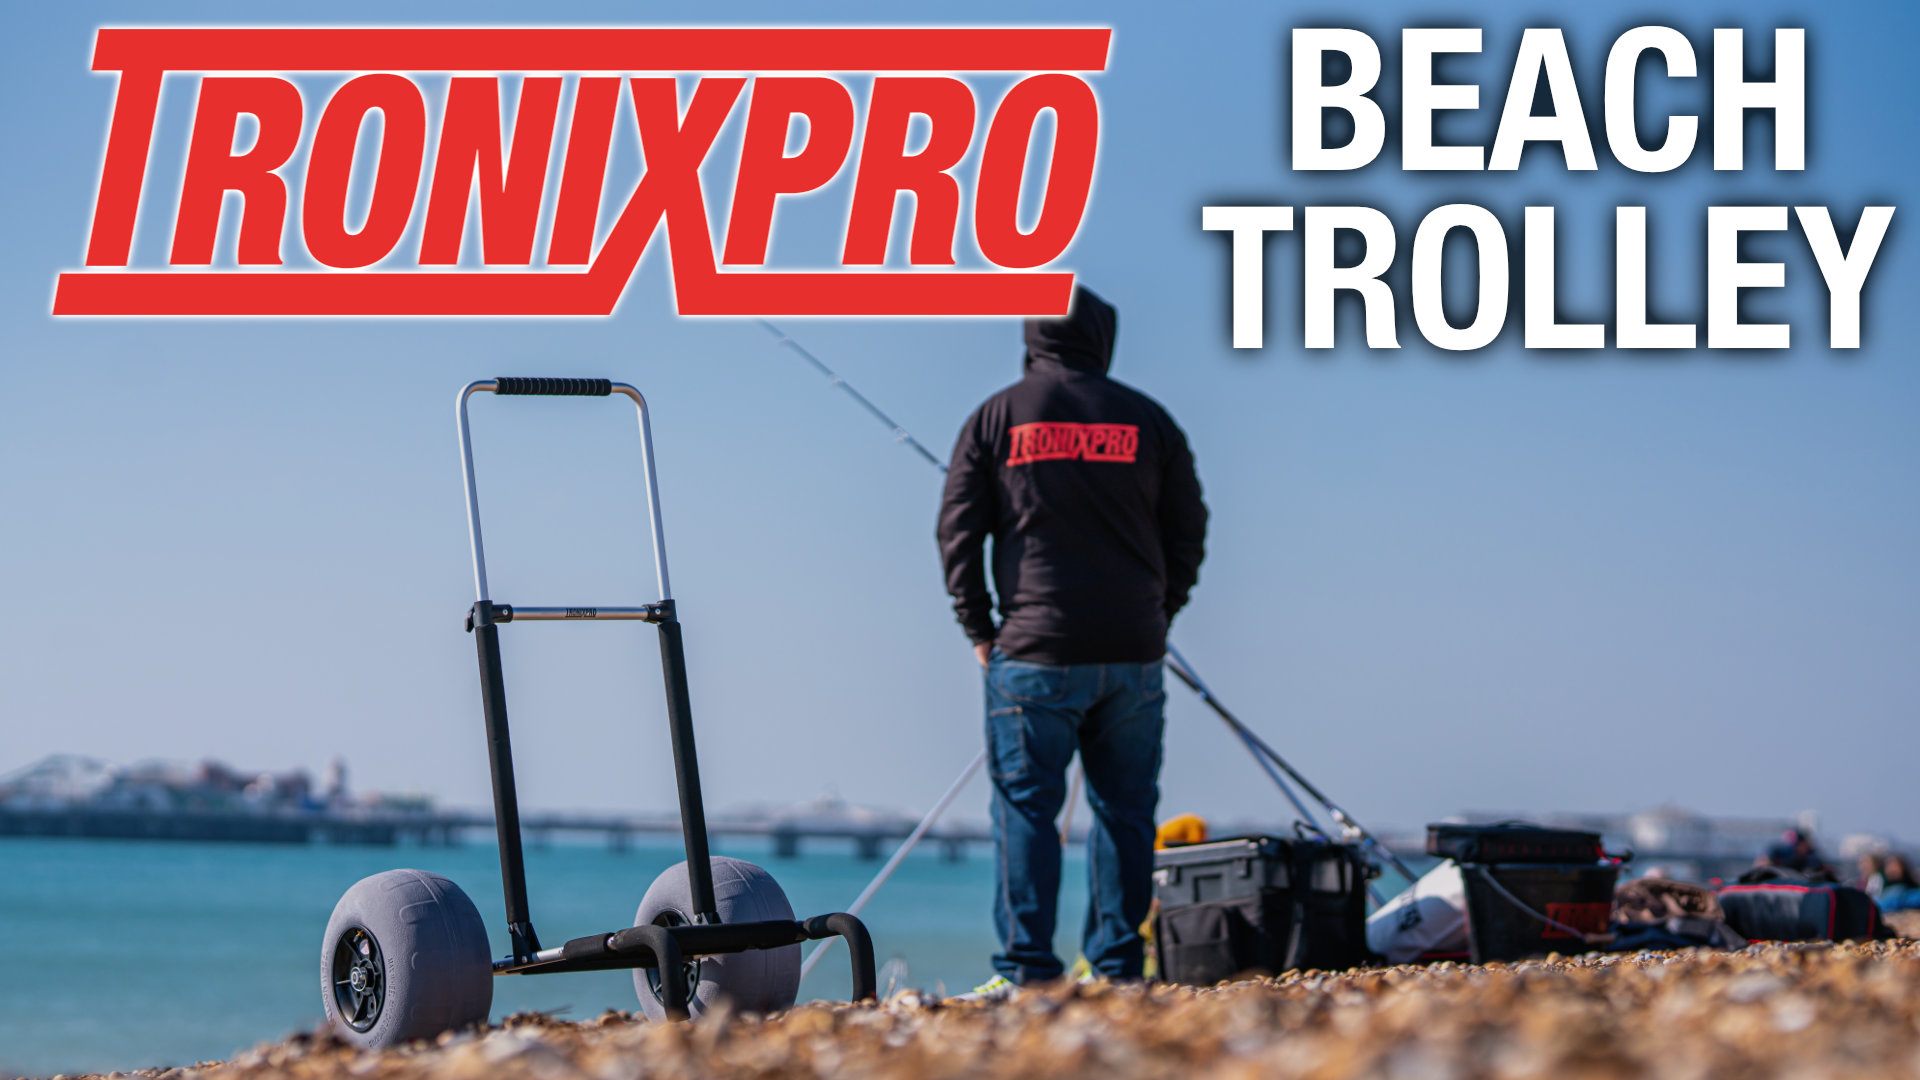 Tronixpro TV: Beach Trolley - Tronix Fishing